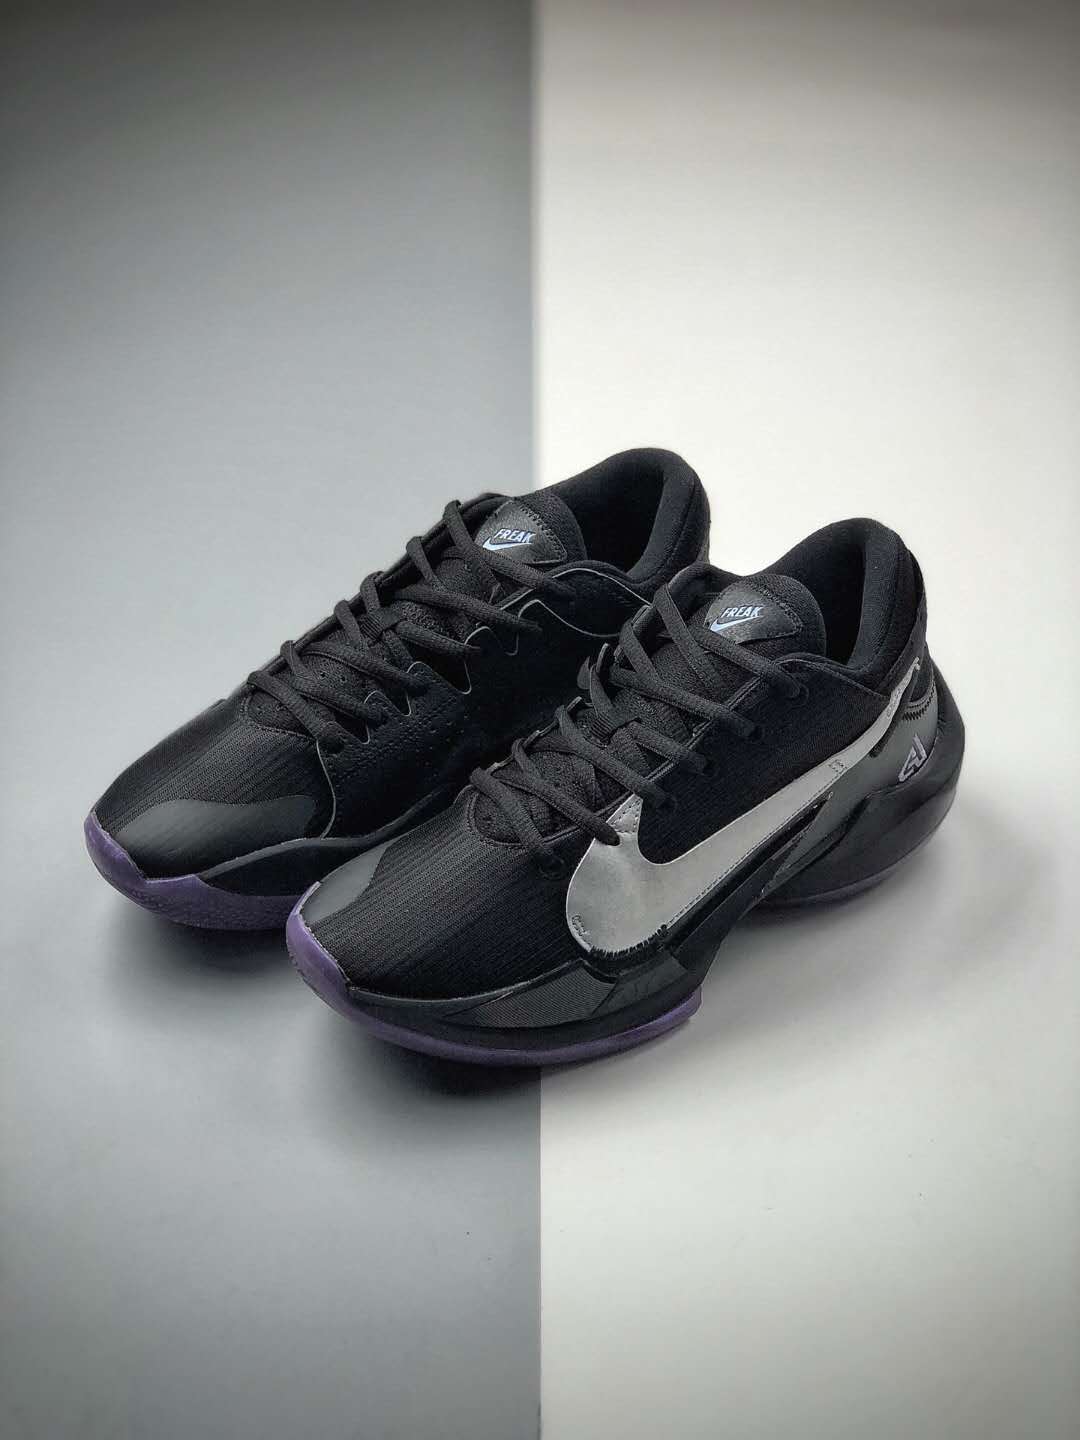 Nike Zoom Freak 2 Dusty Amethyst Black Purple Metallic Silver - CK5424-005